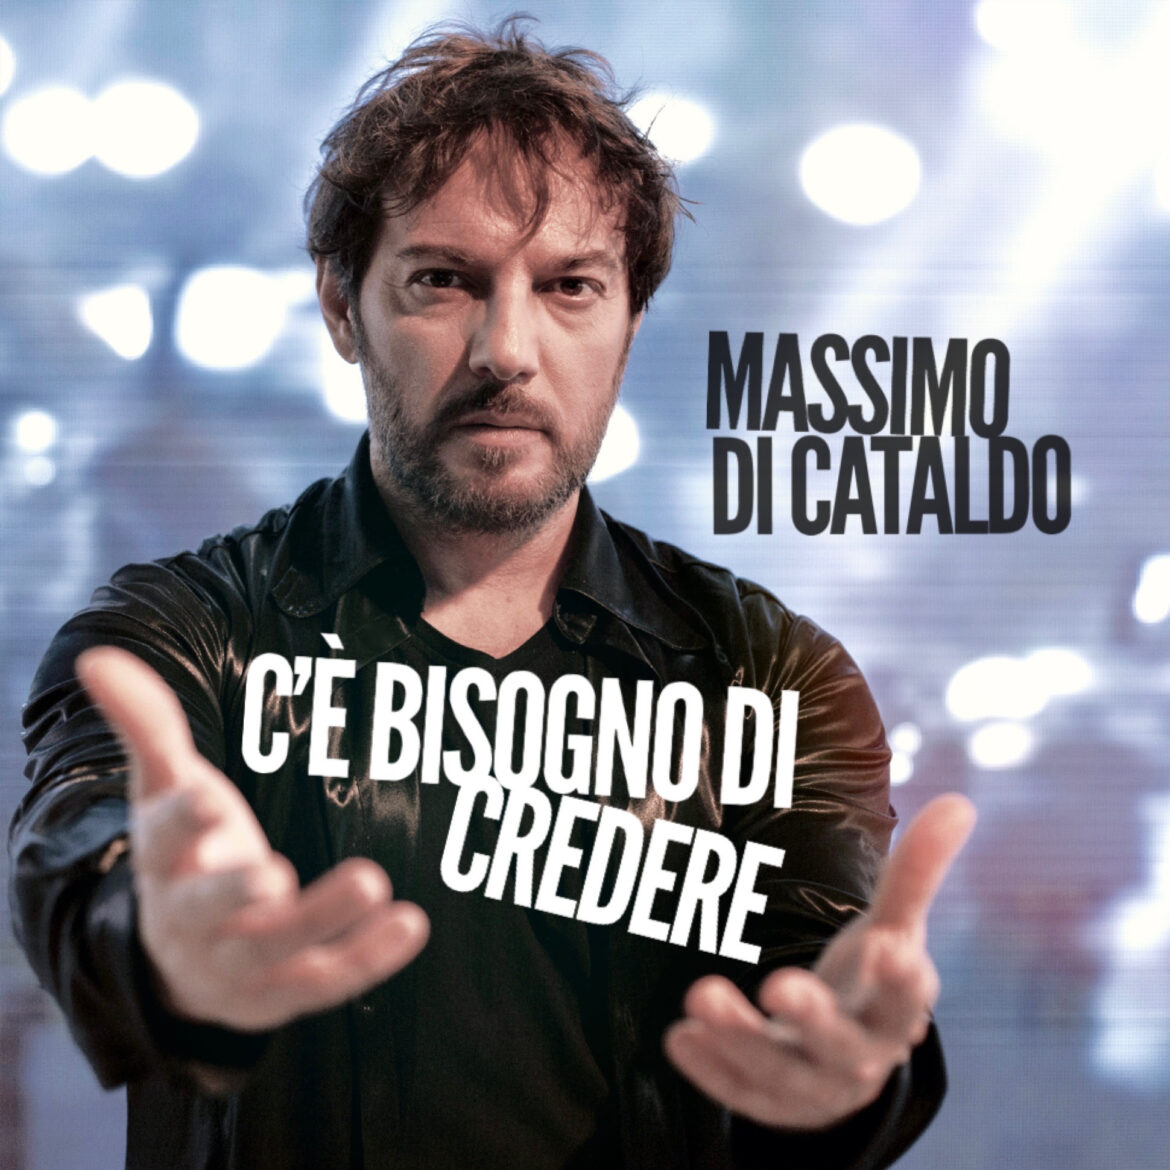 MASSIMO DI CATALDO  Nuovo singolo  “C’è bisogno di credere“ In radio e sui digital da martedì 9 febbraio